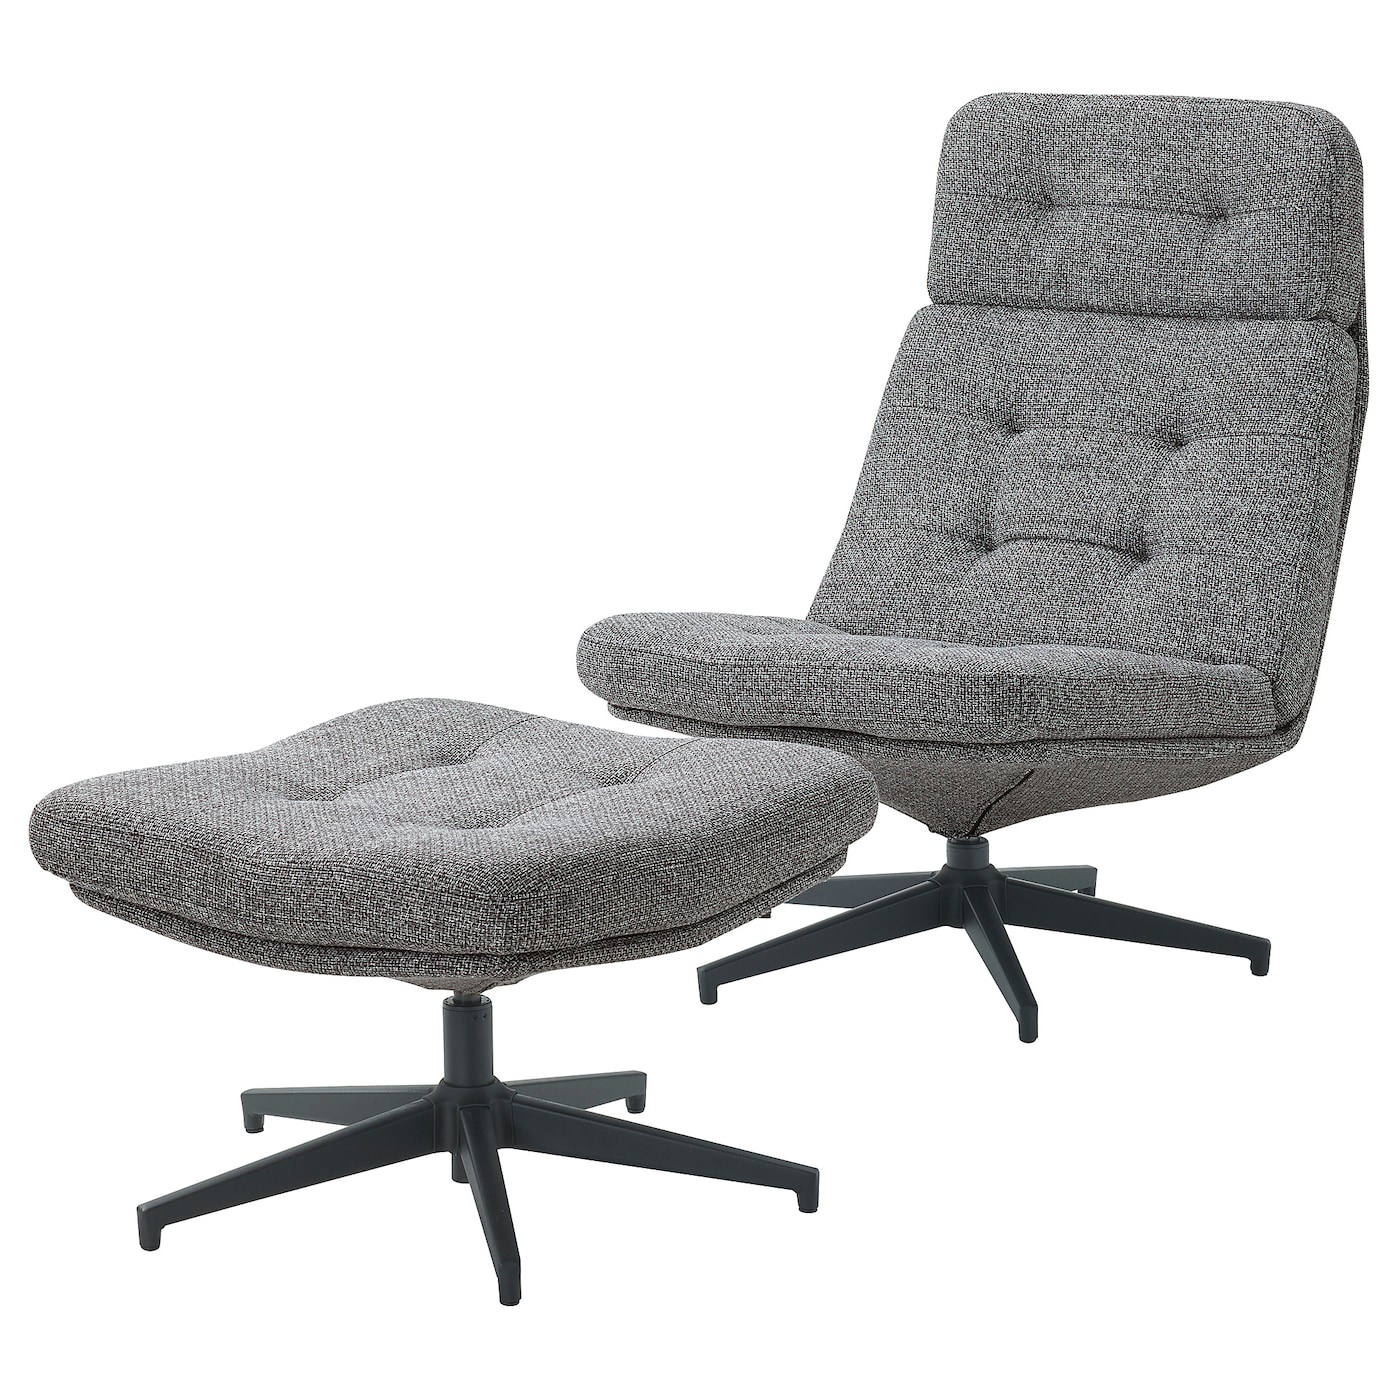 ХАВБЕРГ Кресло и подставка для ног, Лейде серый/черный HAVBERG IKEA дизайнерское эргономичное кресло расслабляющая подставка для ног вращающееся компьютерное кресло для геймеров откидное кожаное кресло